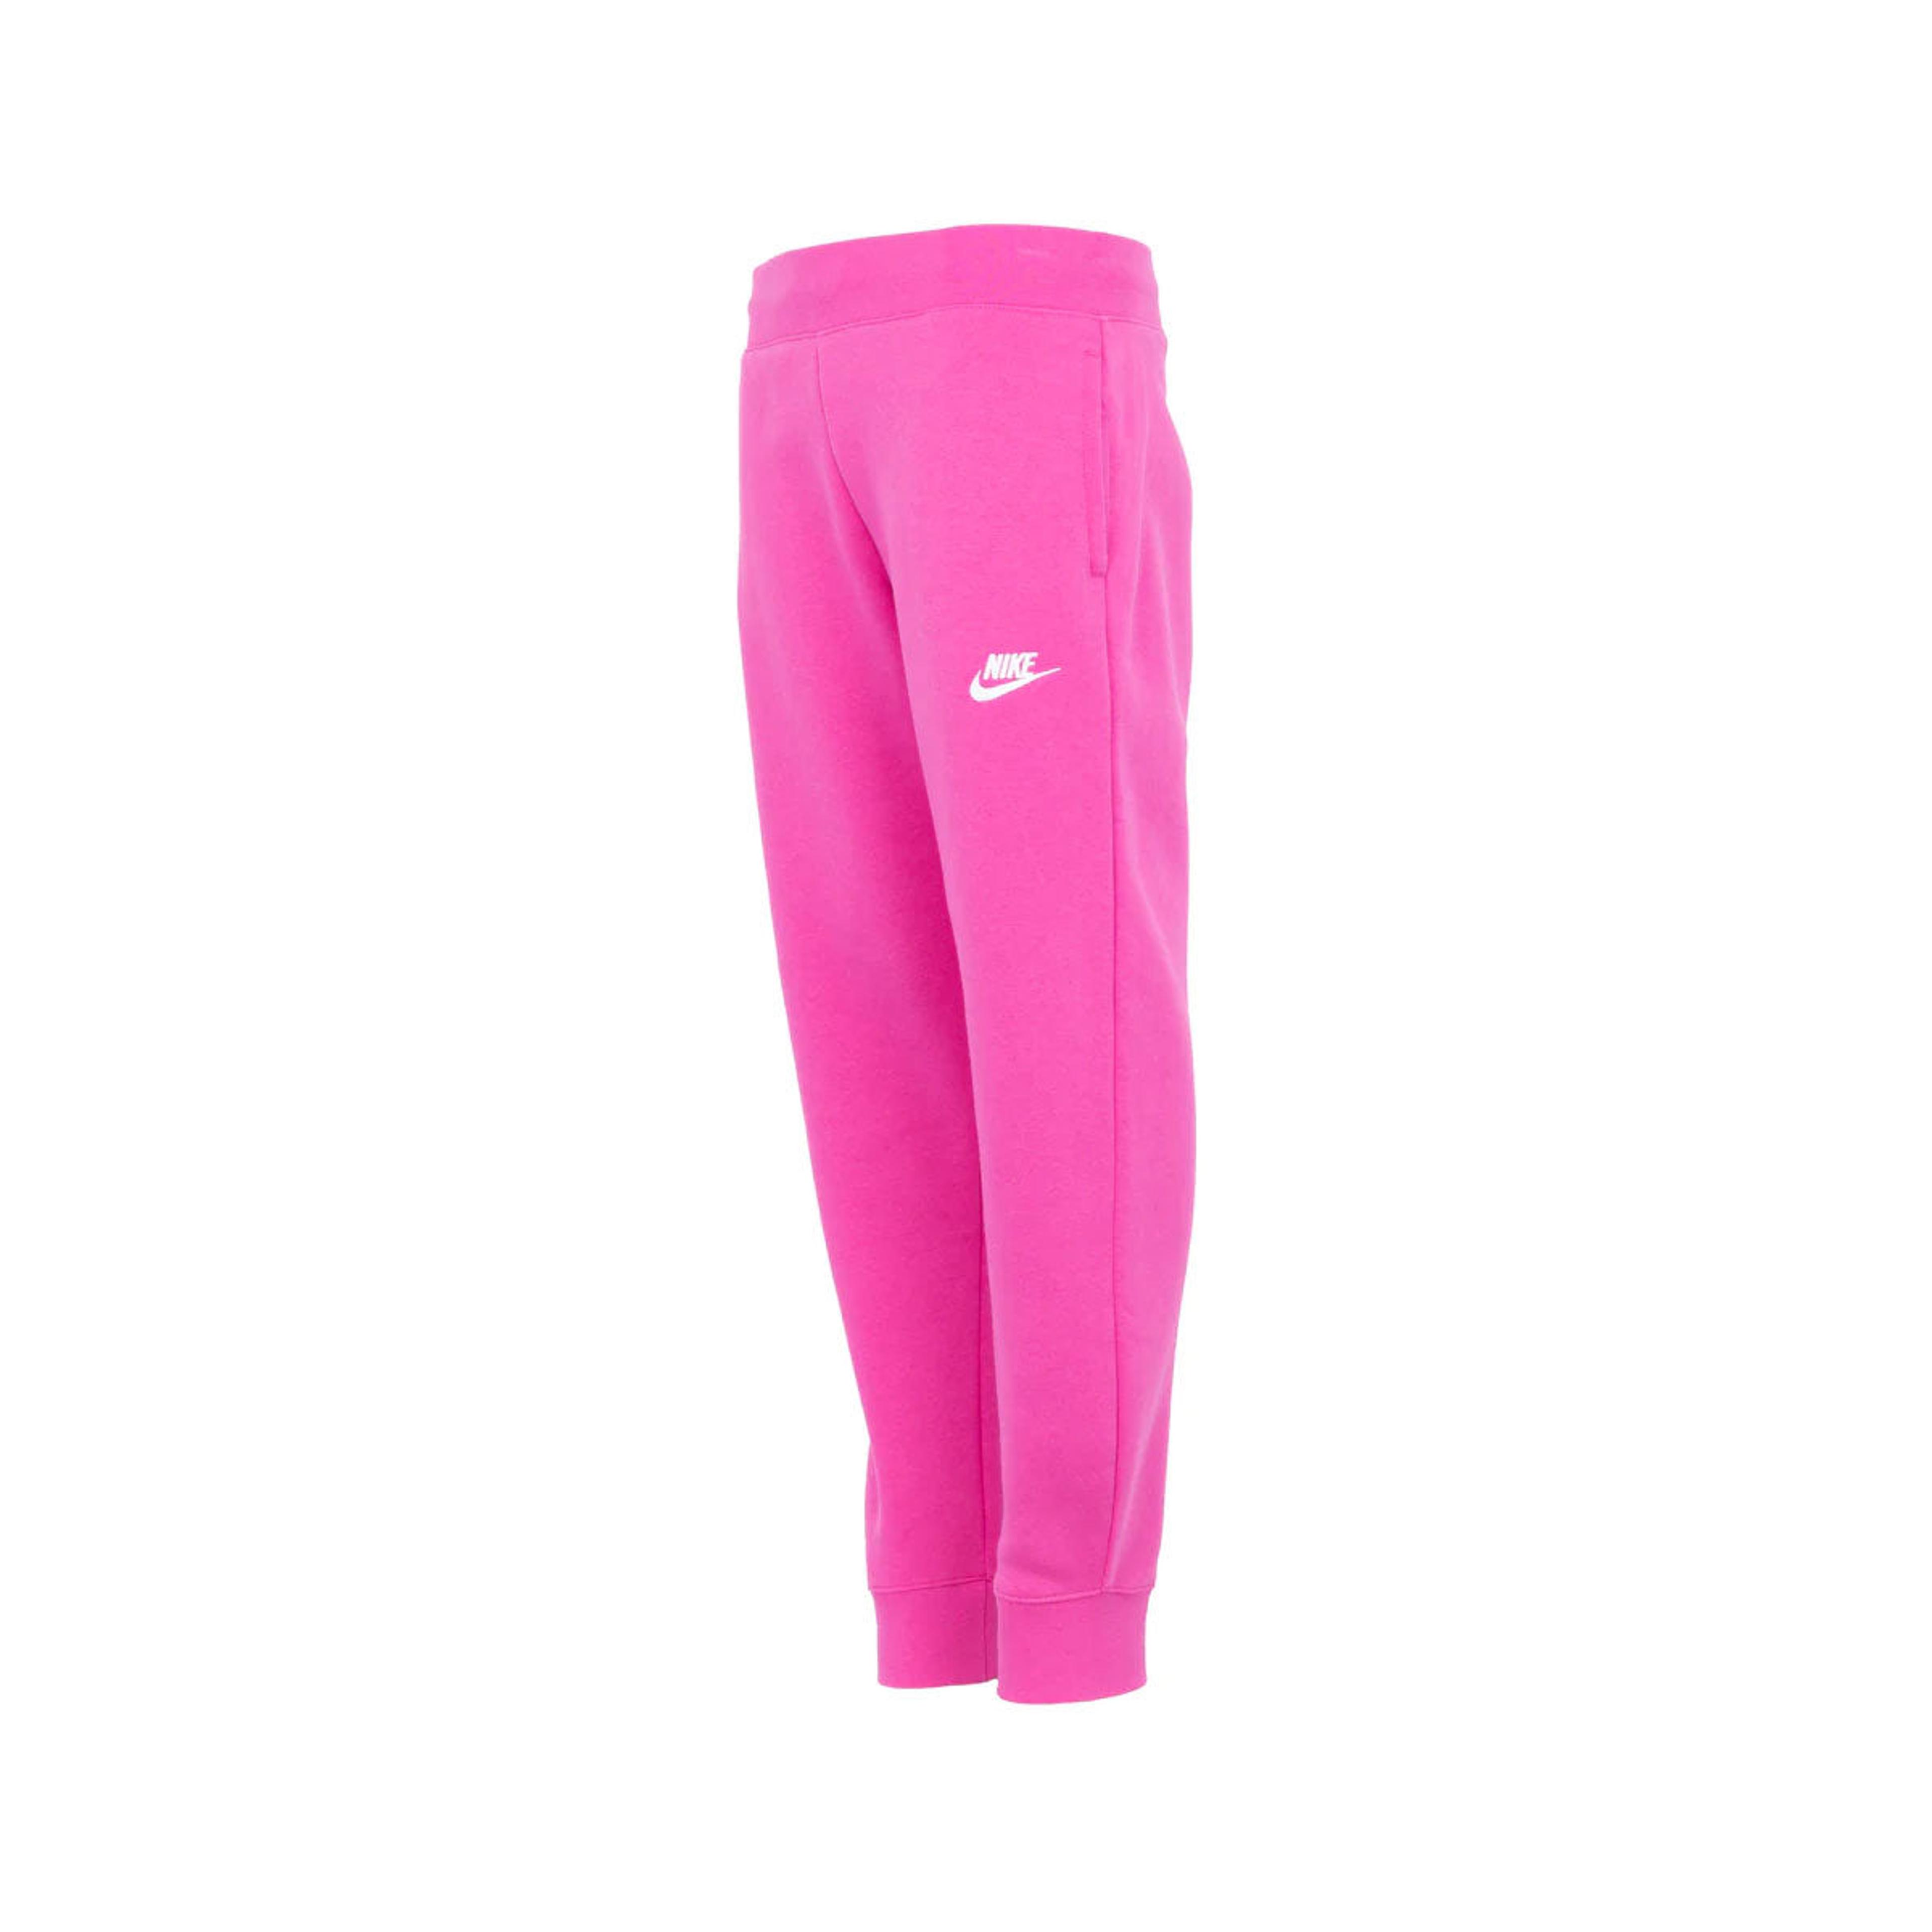 Alternate View 2 of Nike Girls' Sportswear Club Fleece Jogger Pants